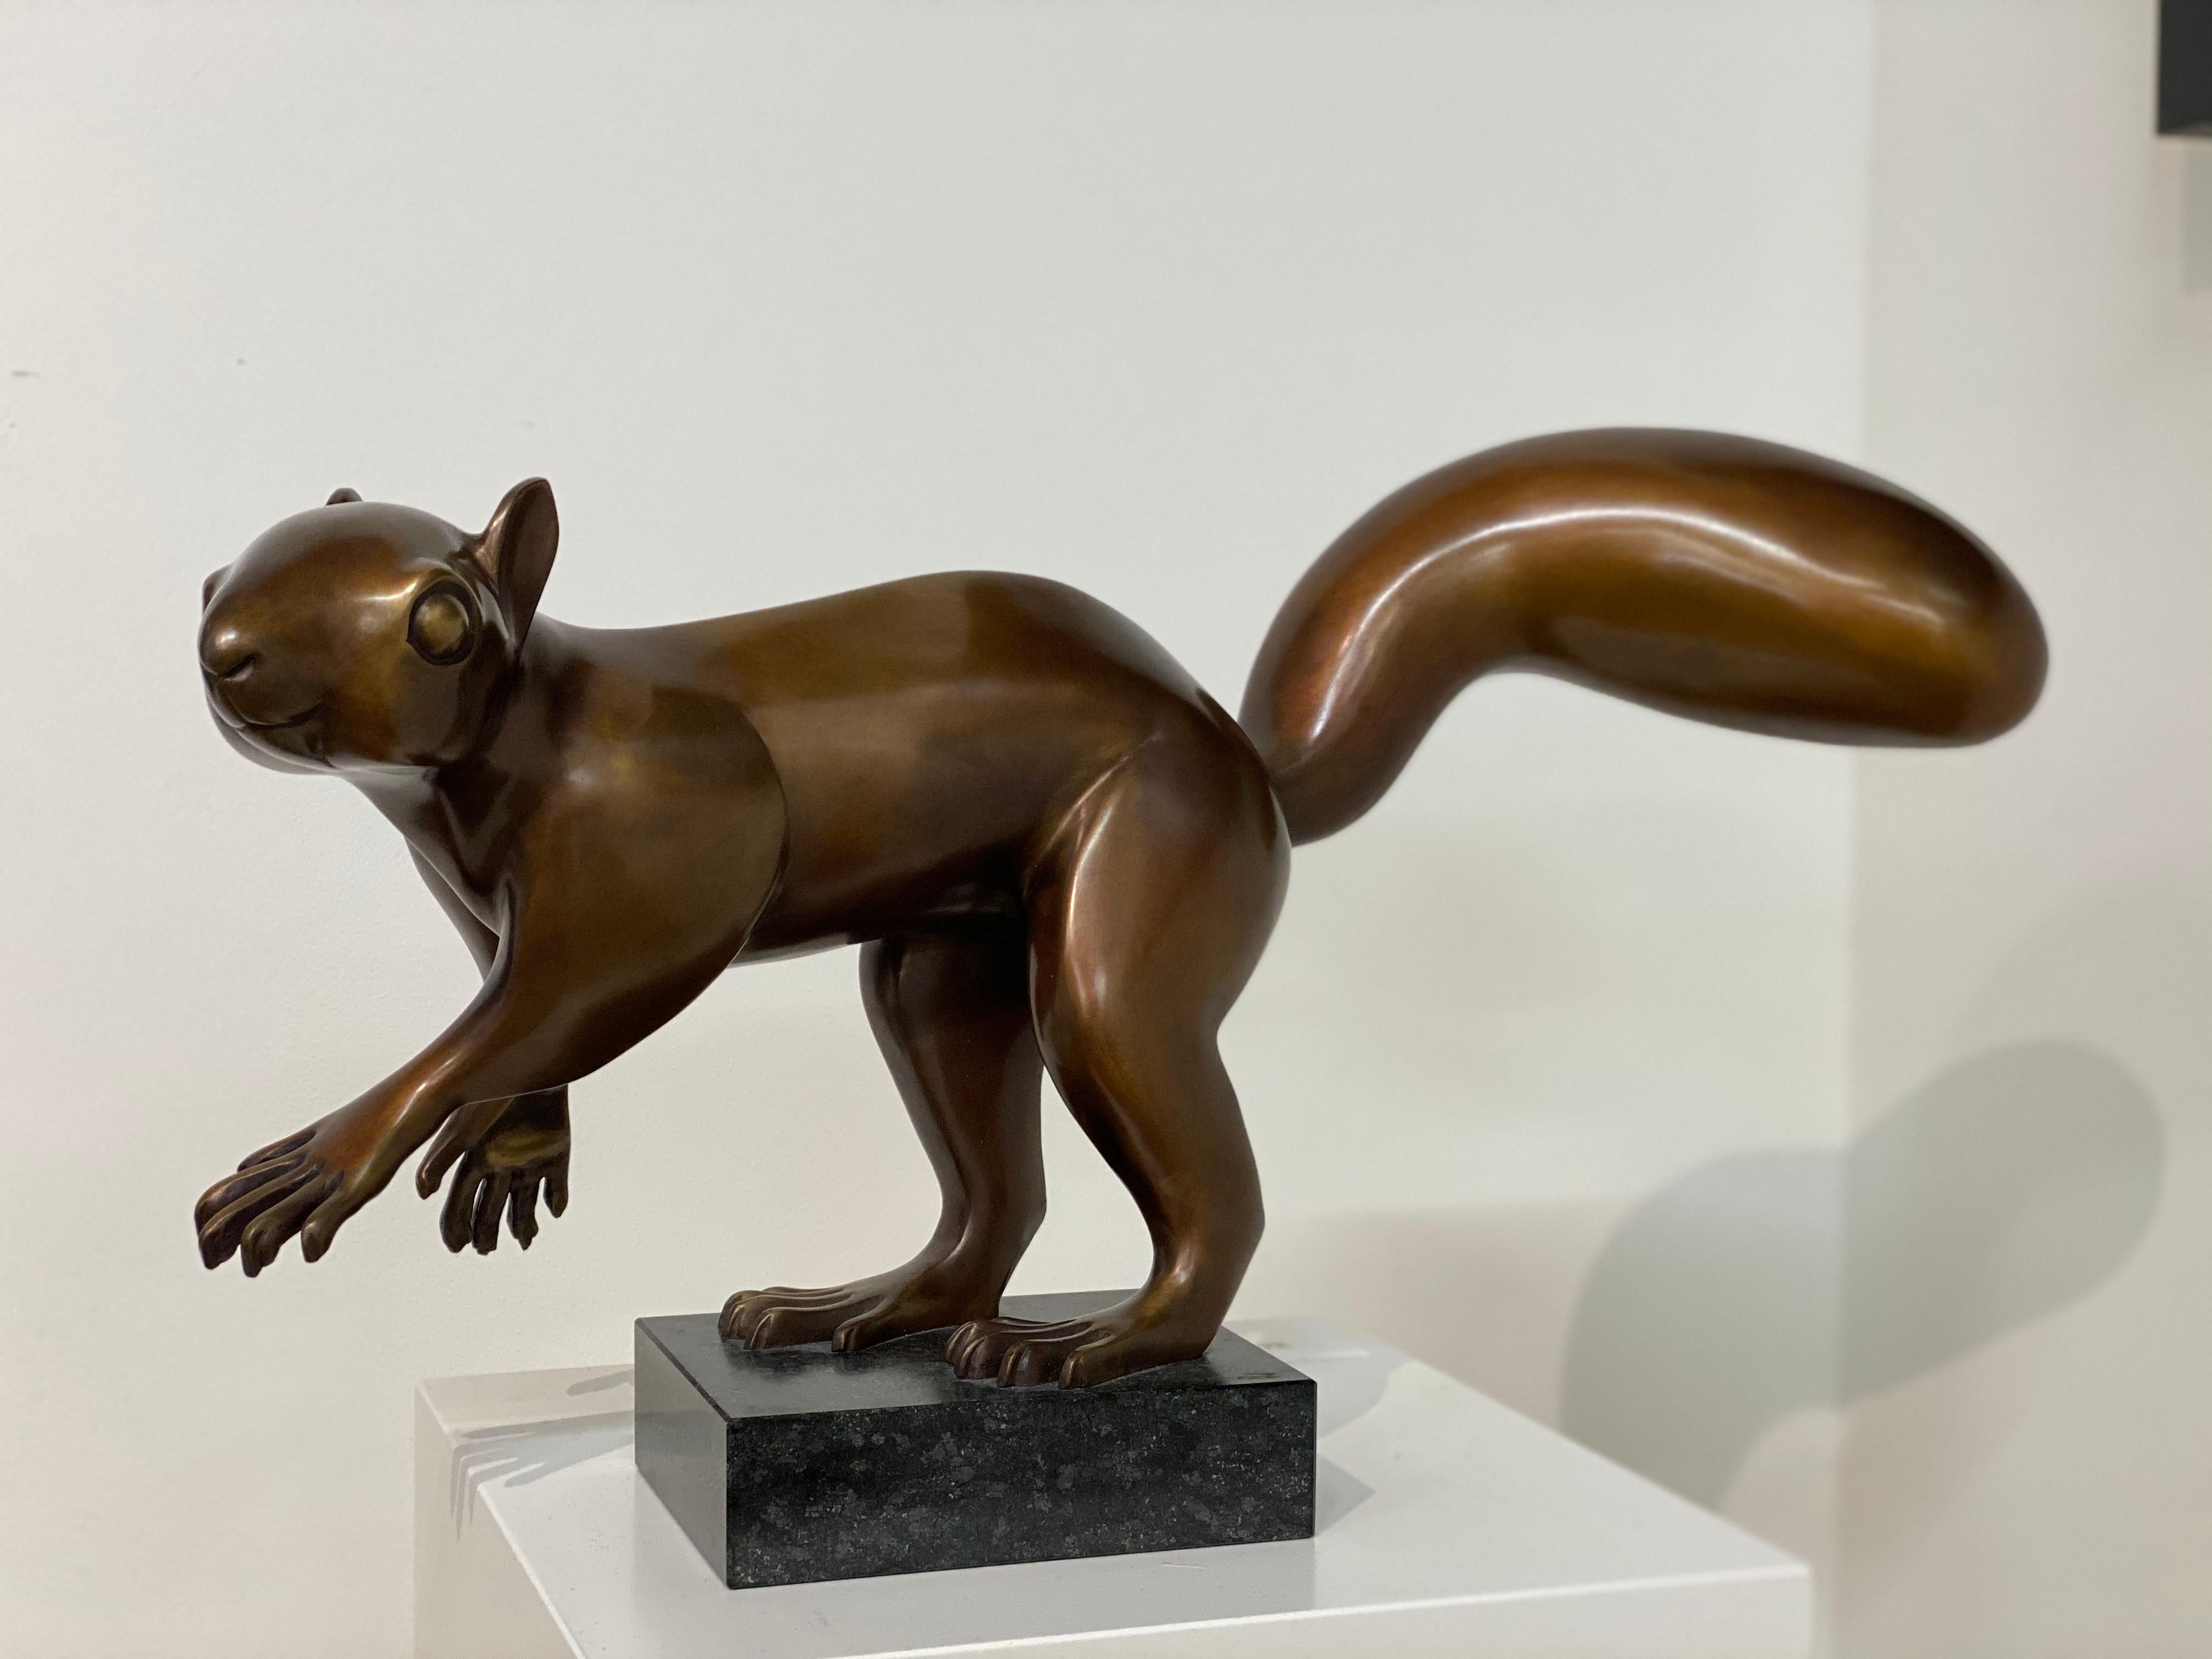 Eichhörnchen- niederländische Bronzeskulptur eines Eichhörnchens aus dem 21. Jahrhundert (Zeitgenössisch), Sculpture, von Frans van Straaten